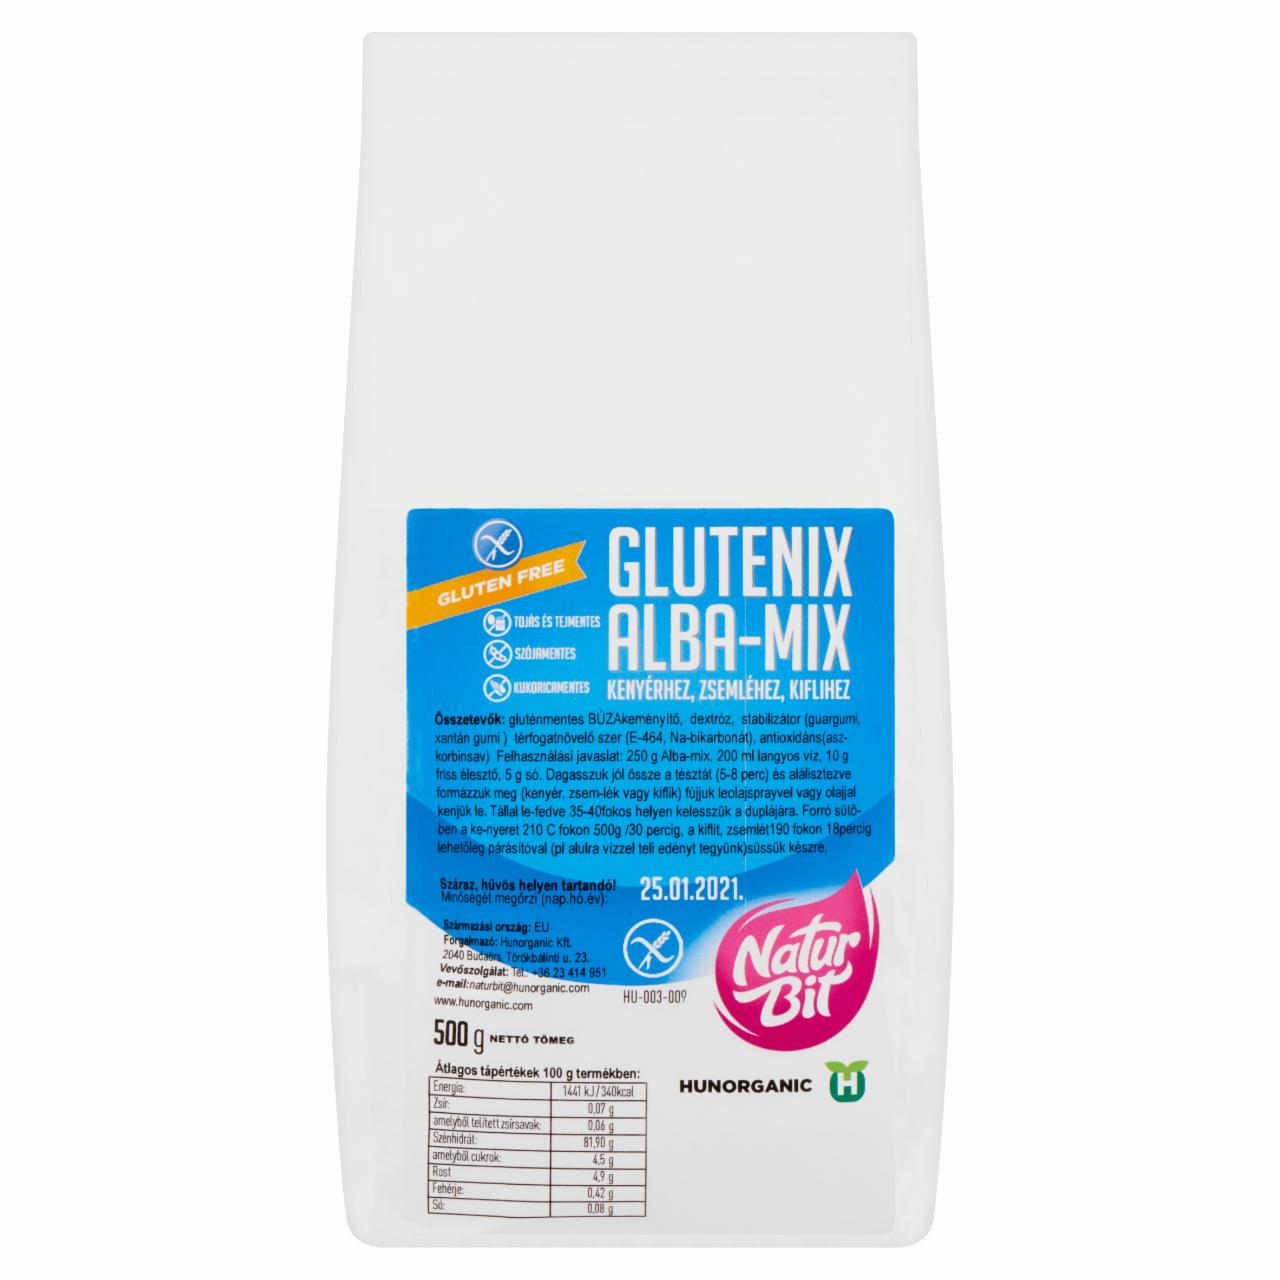 Képek - Naturbit Glutenix Alba-Mix kenyérhez, zsemléhez, kiflihez 500 g